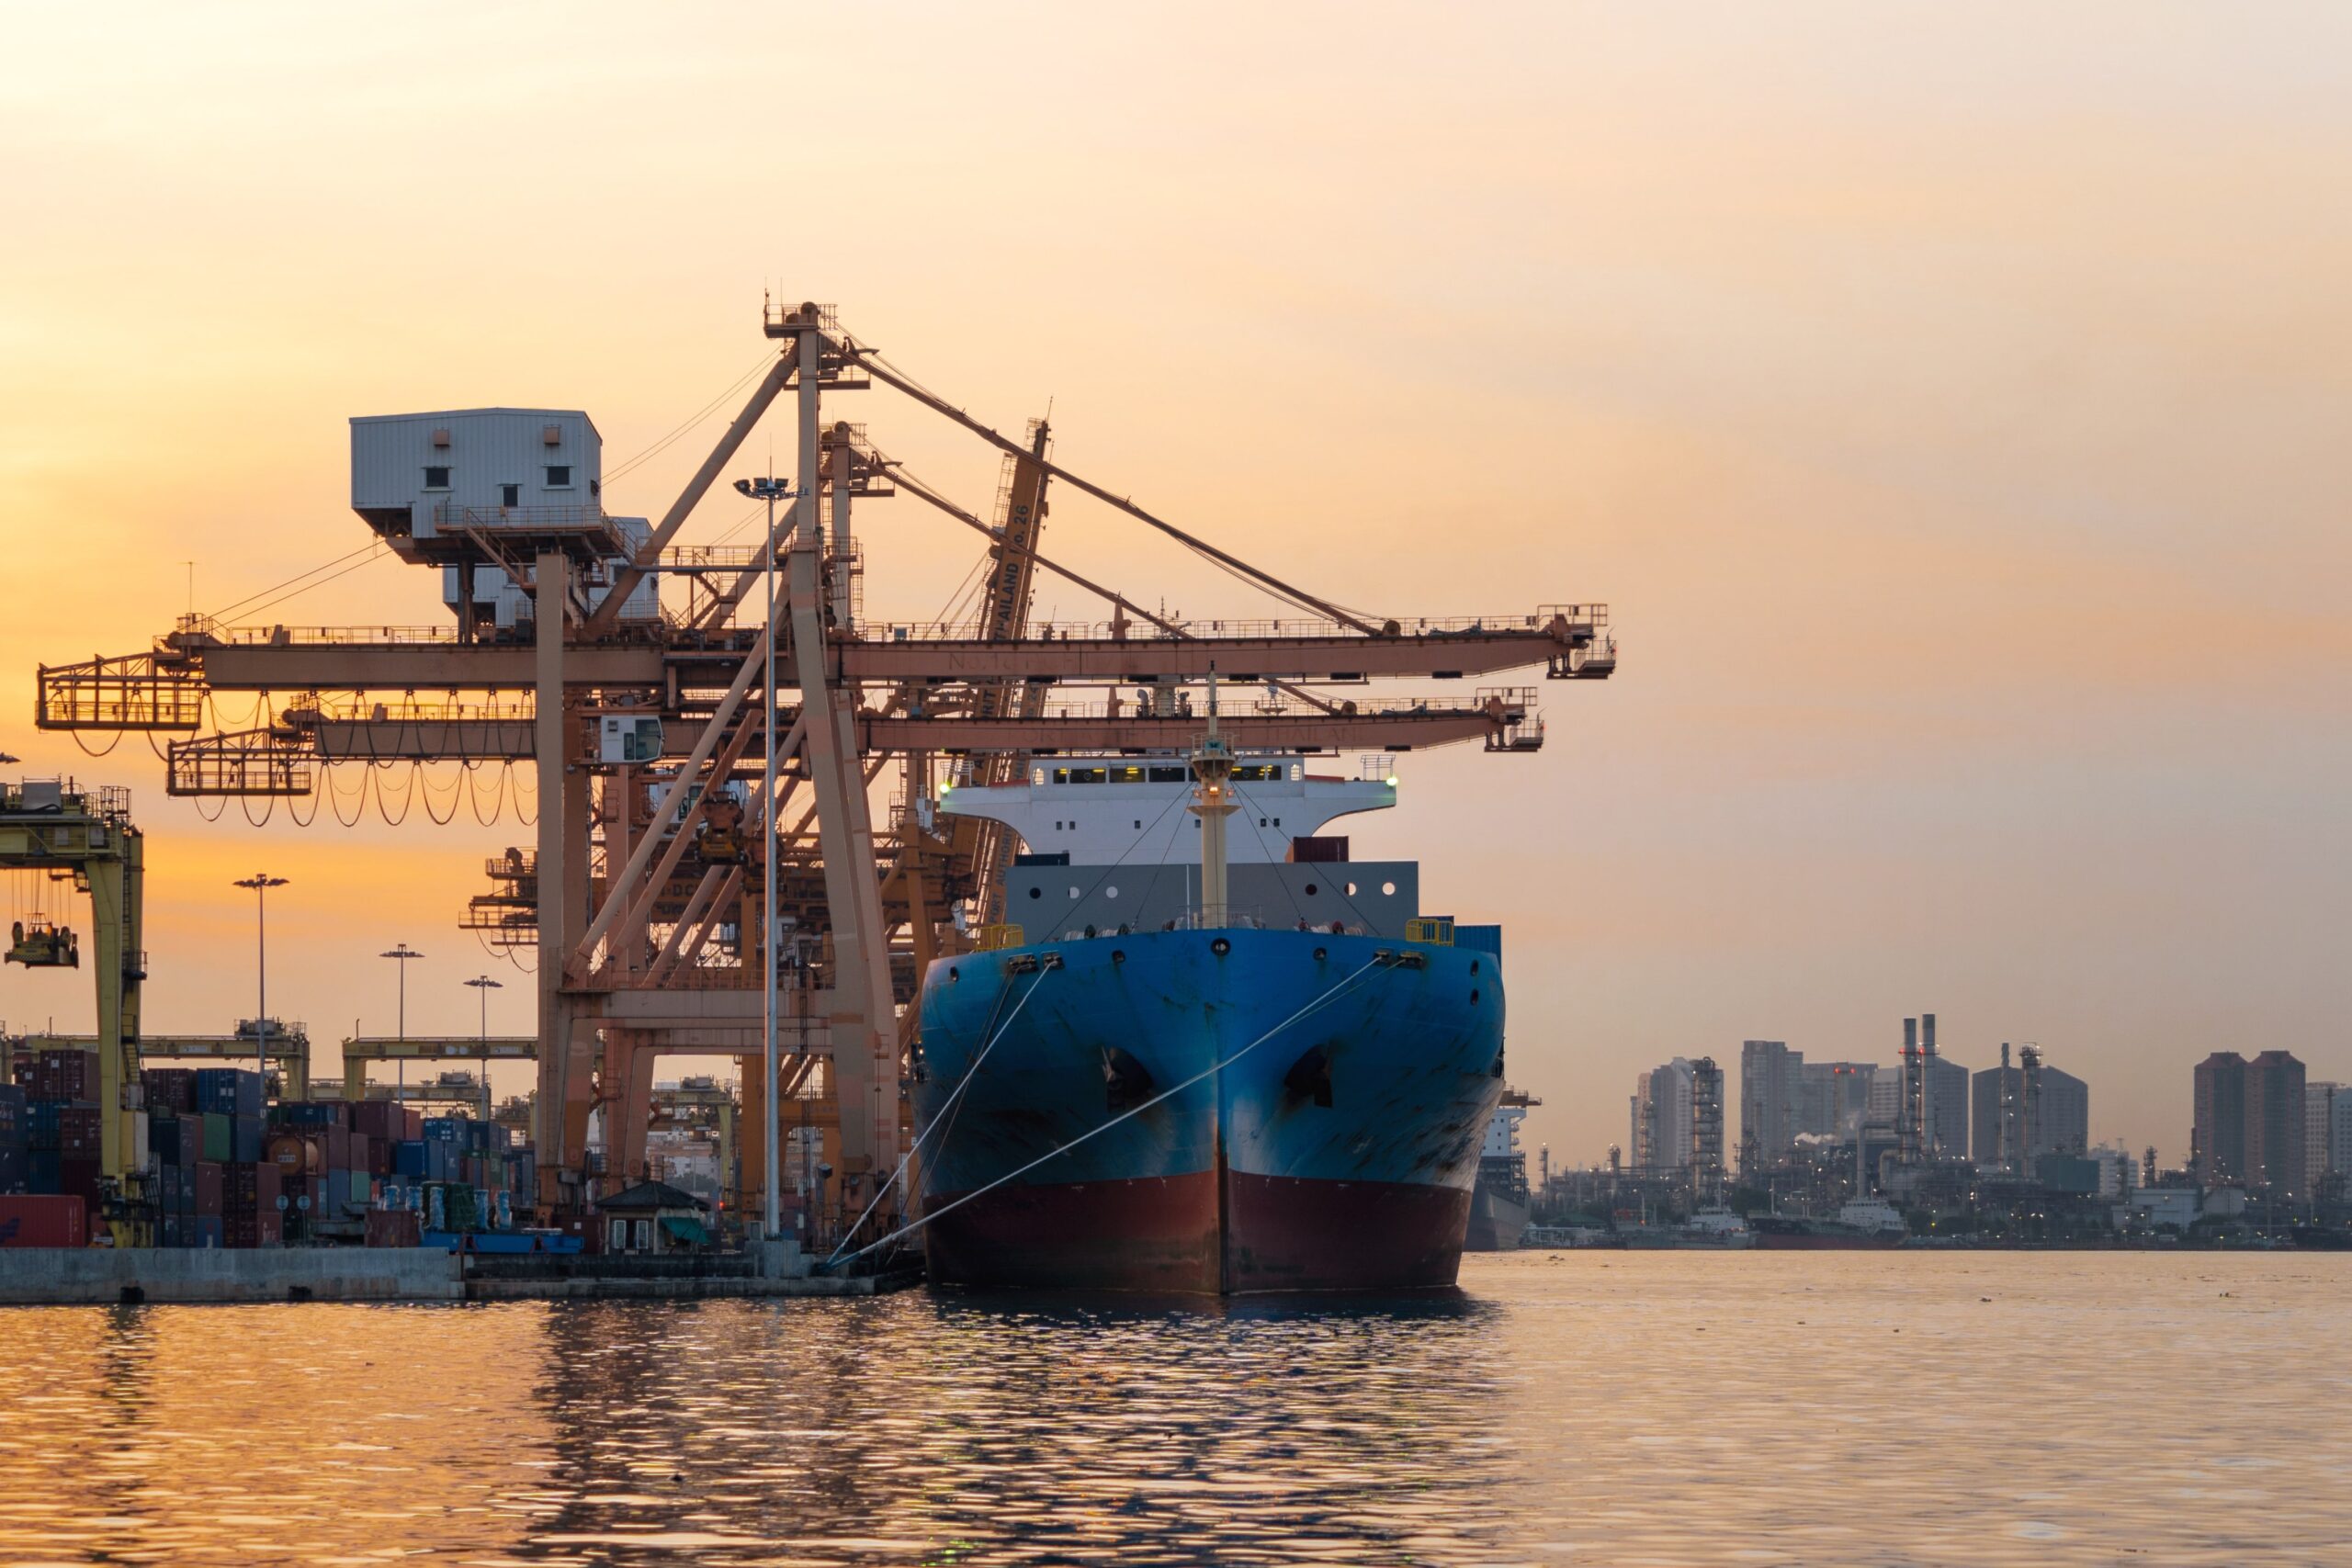 Organizacja transportu morskiego — co należy wziąć pod uwagę?